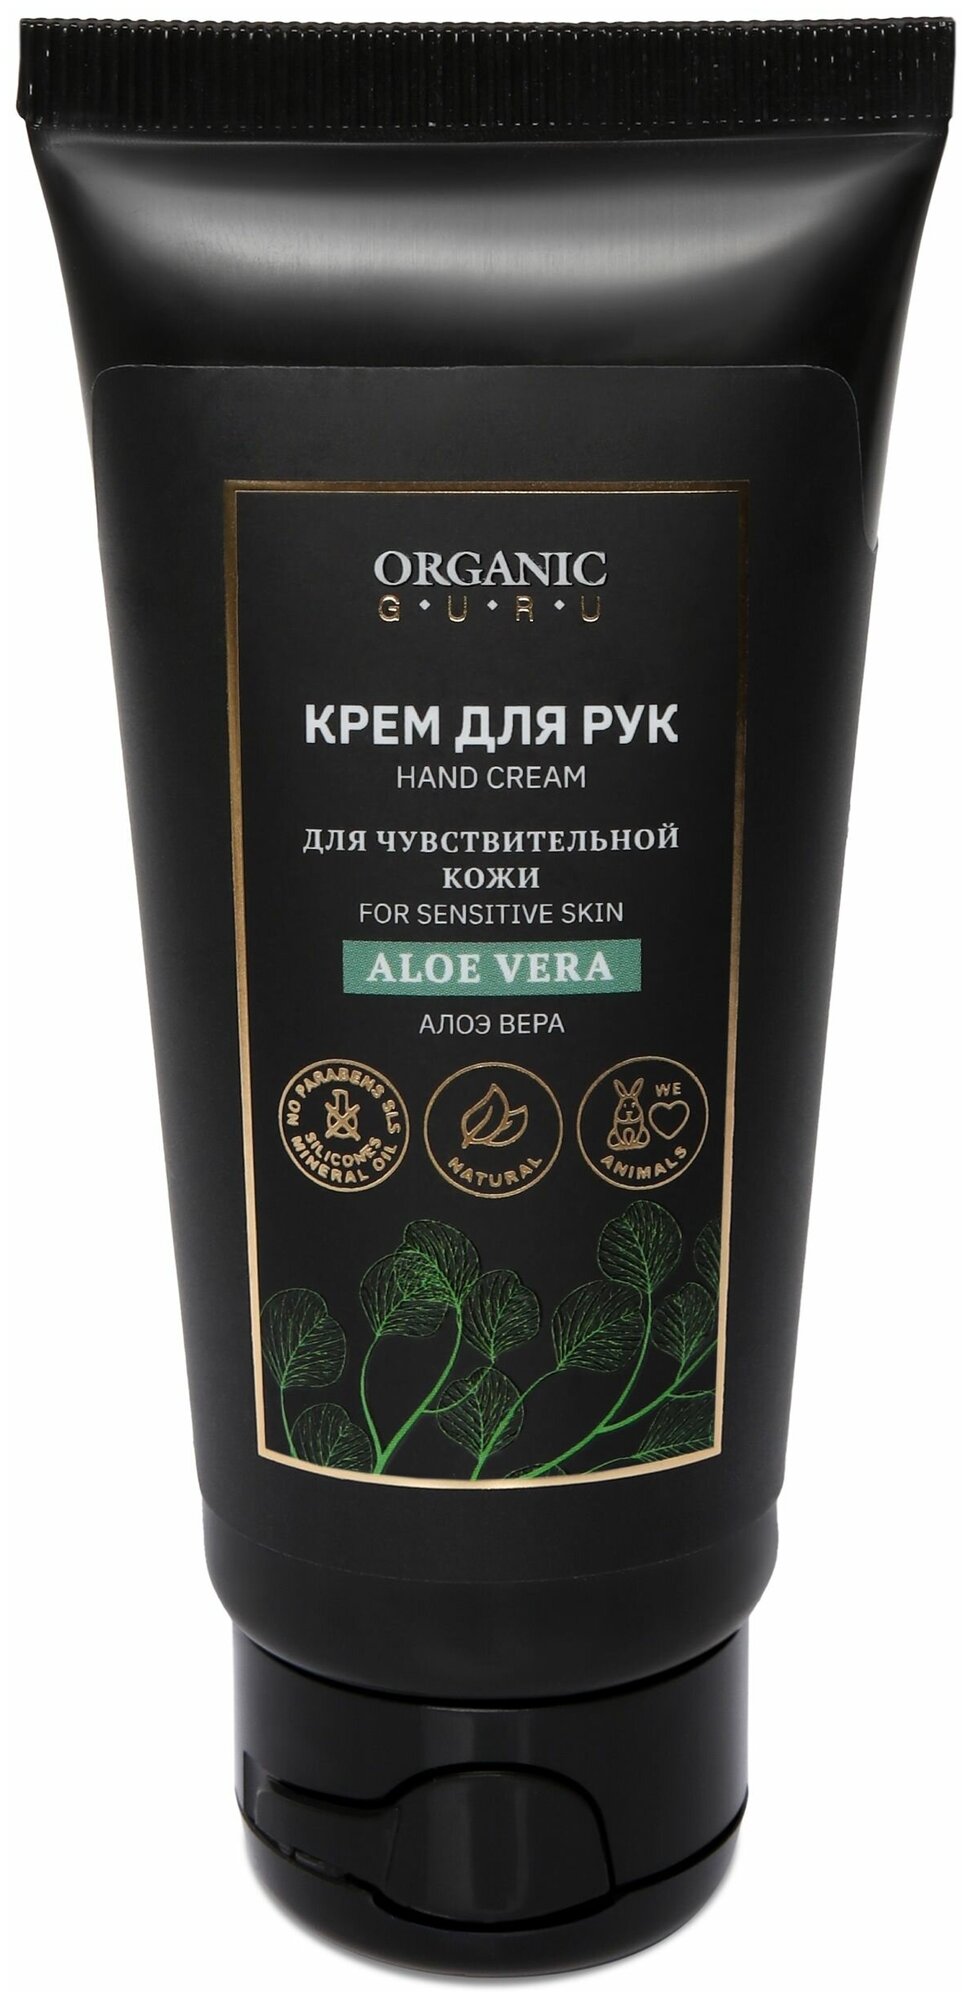 Organic Guru Крем для рук "Алоэ Вера" для чувствительной кожи, 60 мл. Уходовый крем "Aloe Vera" Органик Гуру